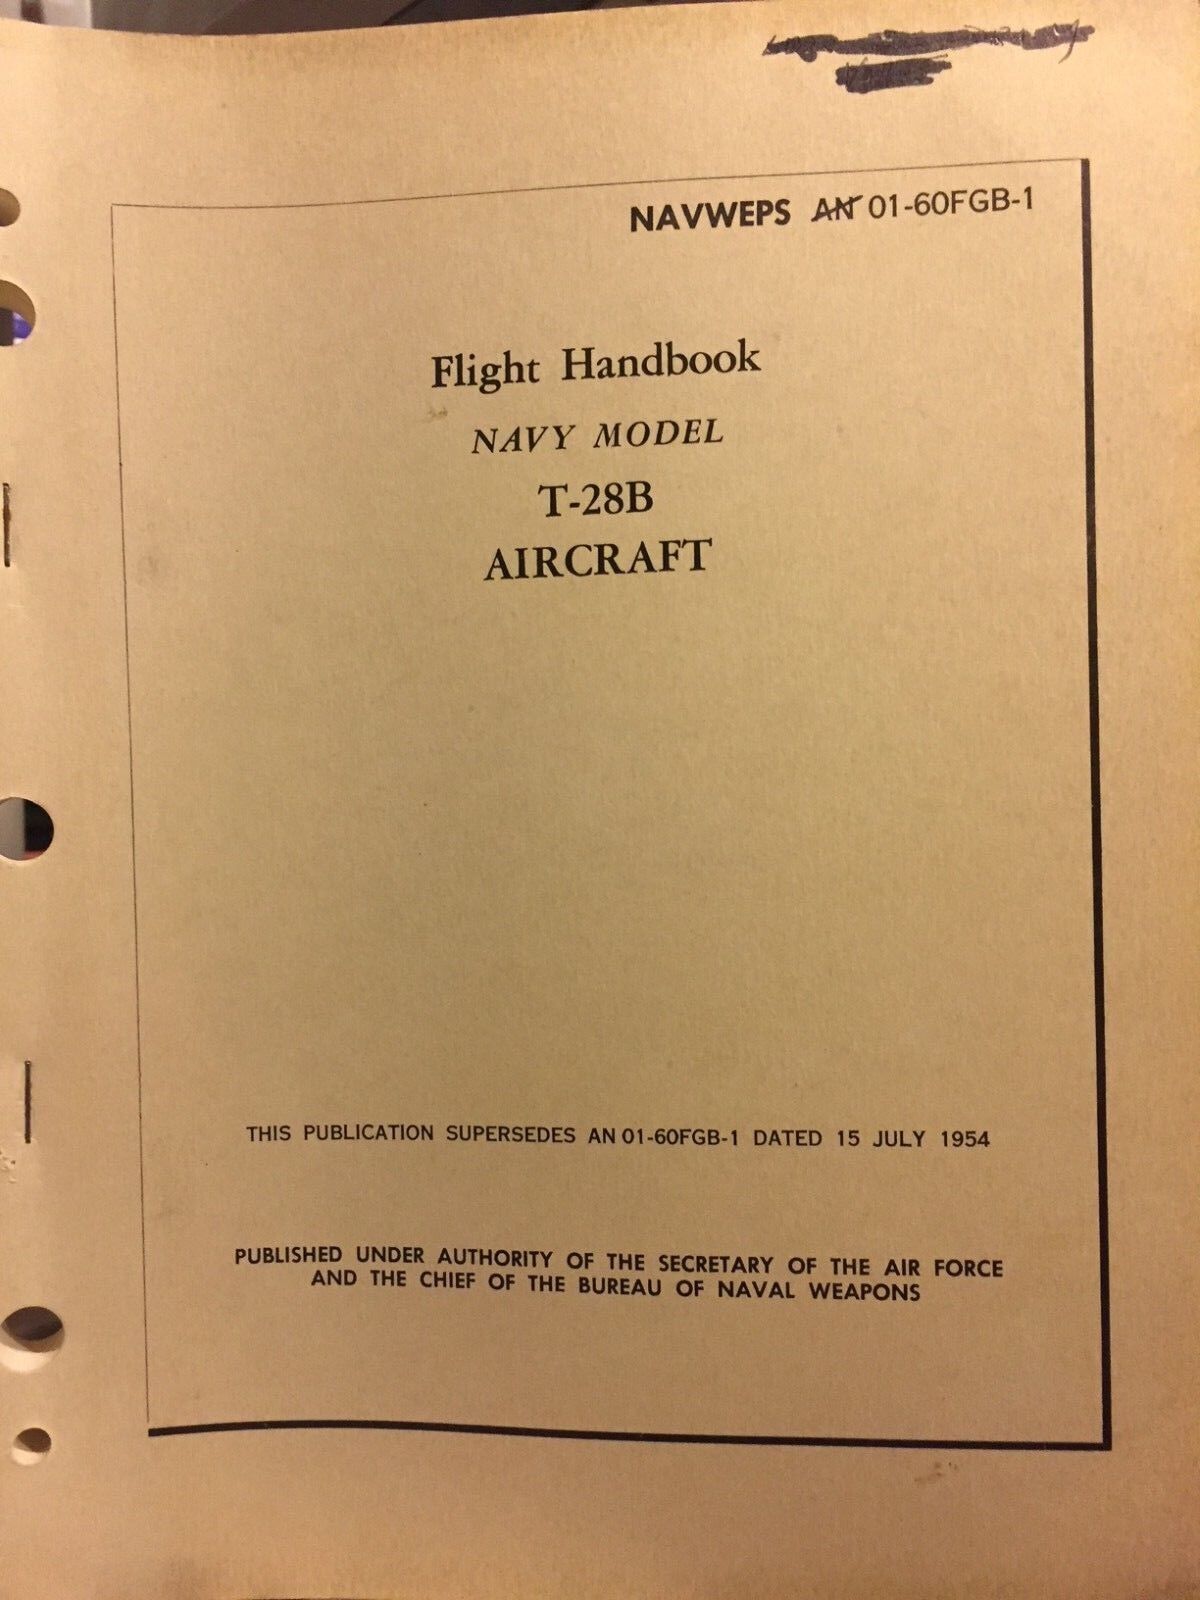 Original Flight Handbook for Navy Model T-28 From 1954